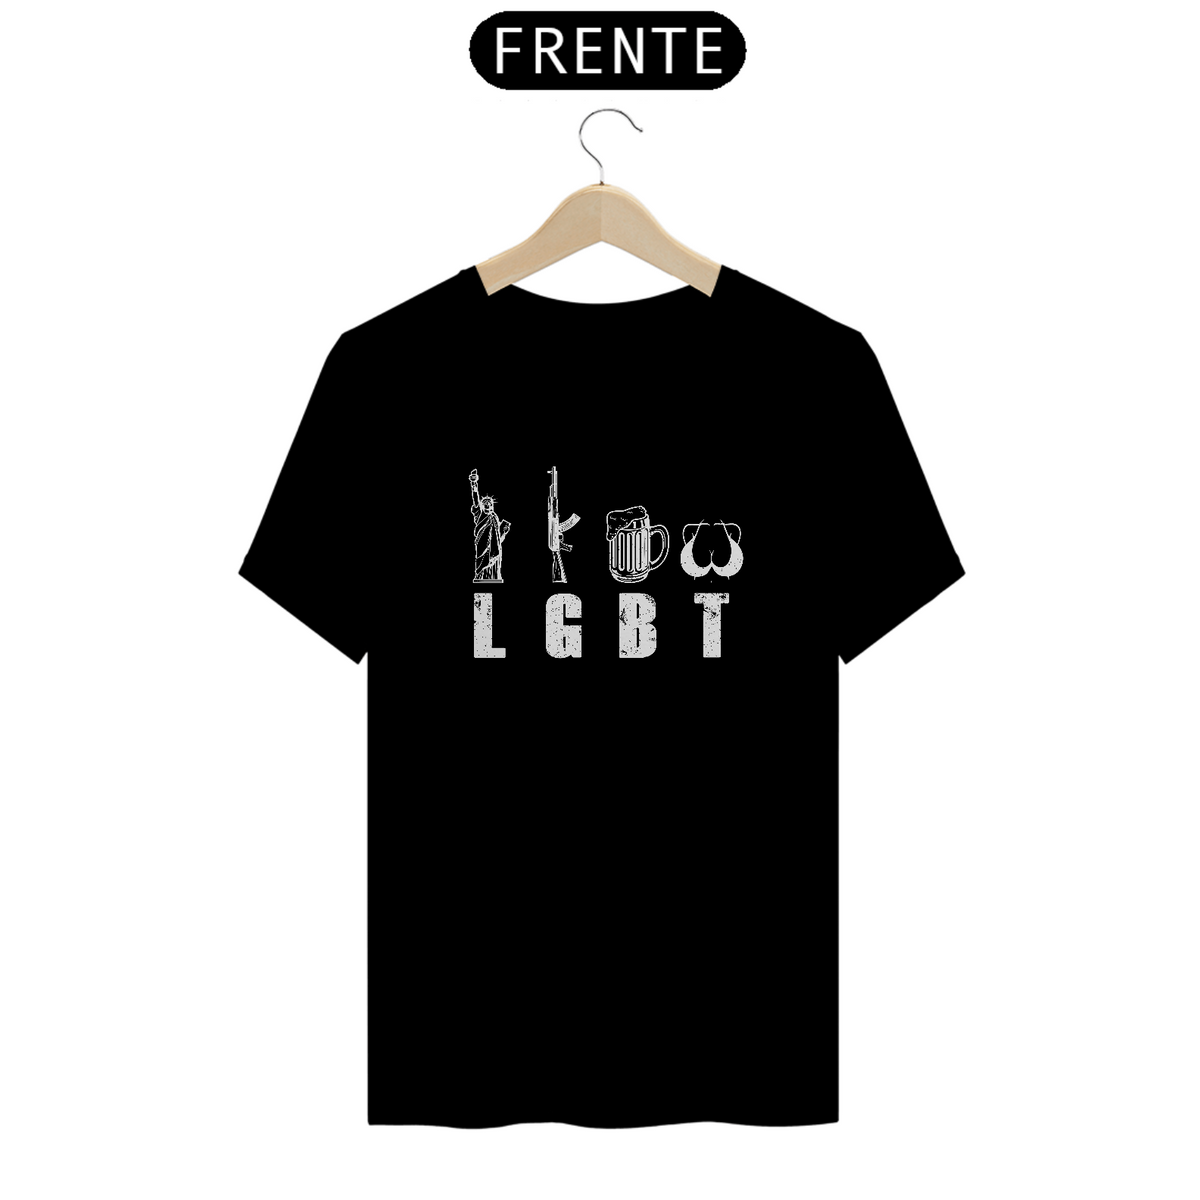 Nome do produto: Camiseta - LGBT #1